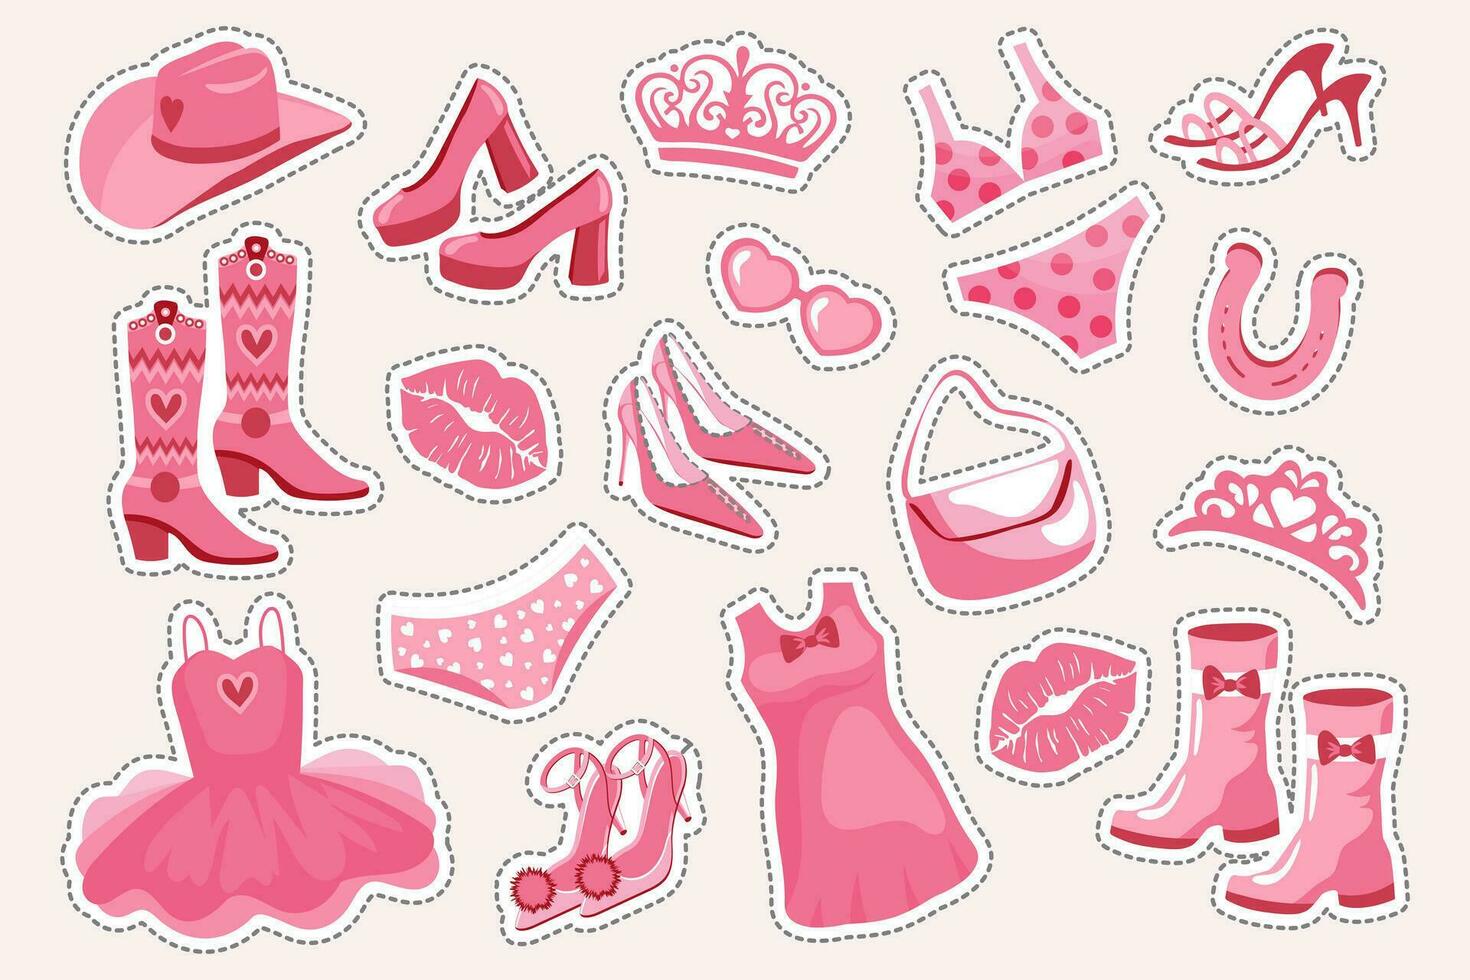 Princesa adesivo definir. Rosa moda definir, acessórios e roupas para uma Rosa boneca. coroa, vestir, sapato, vaqueiro chapéu, botas, bolsa, óculos. vetor